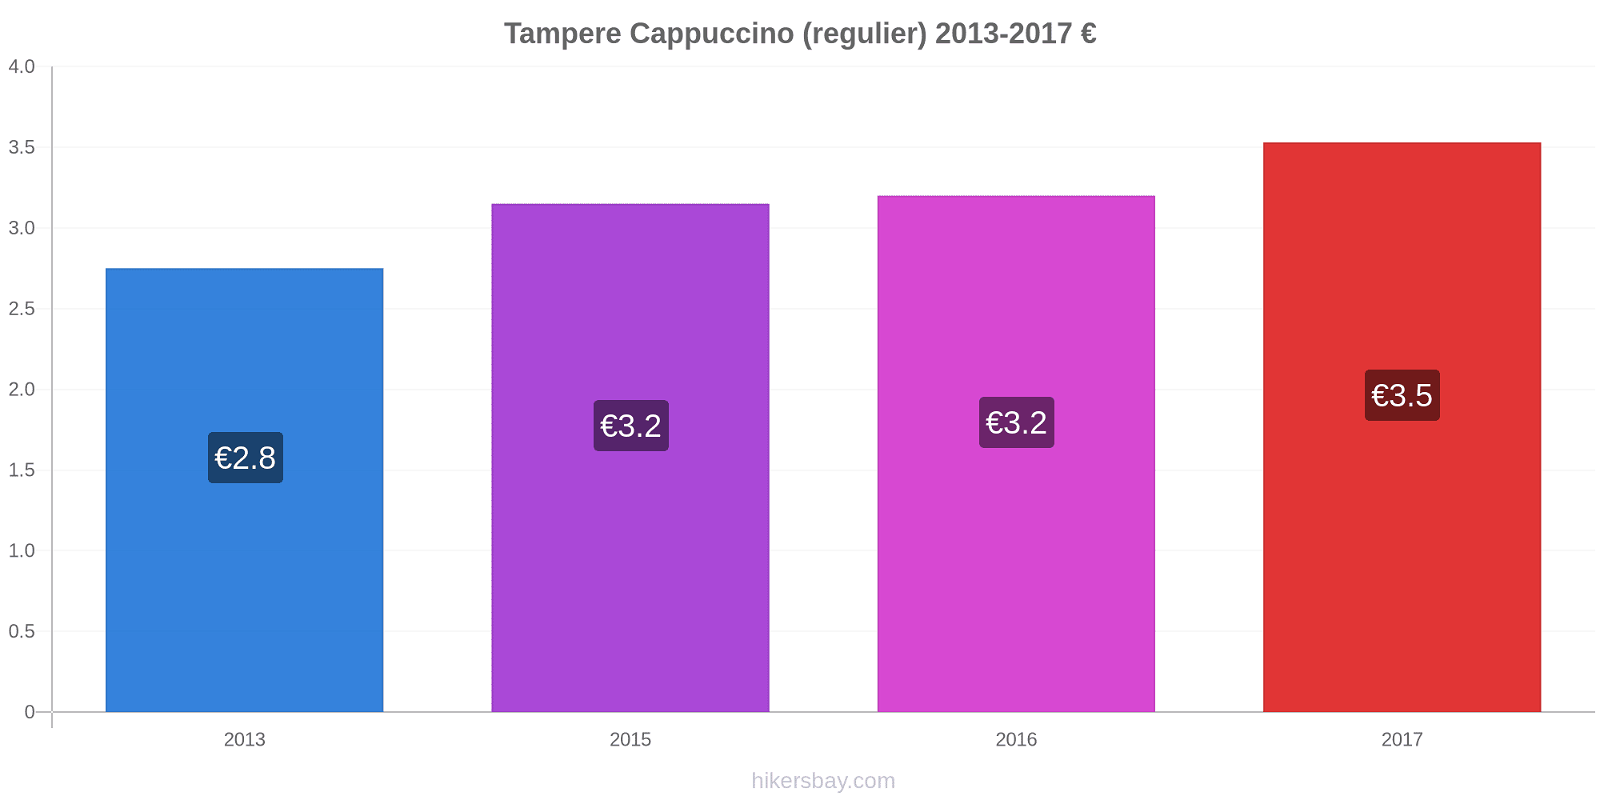 Tampere prijswijzigingen Cappuccino (regelmatige) hikersbay.com